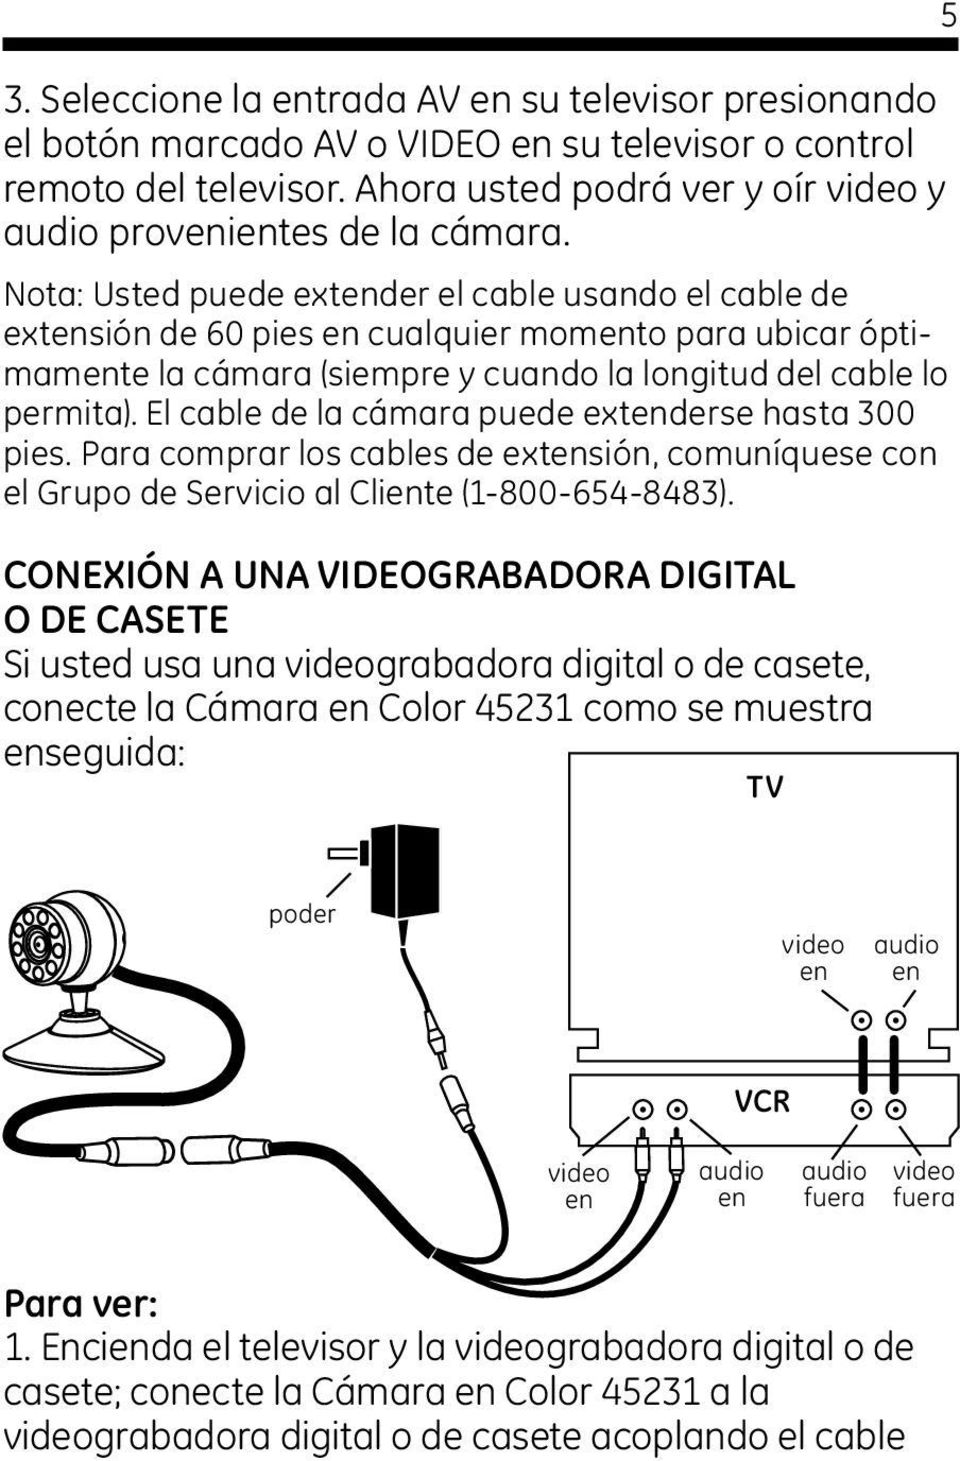 El cable de la cámara puede extenderse hasta 300 pies. Para comprar los cables de extensión, comuníquese con el Grupo de Servicio al Cliente (1-800-654-8483).